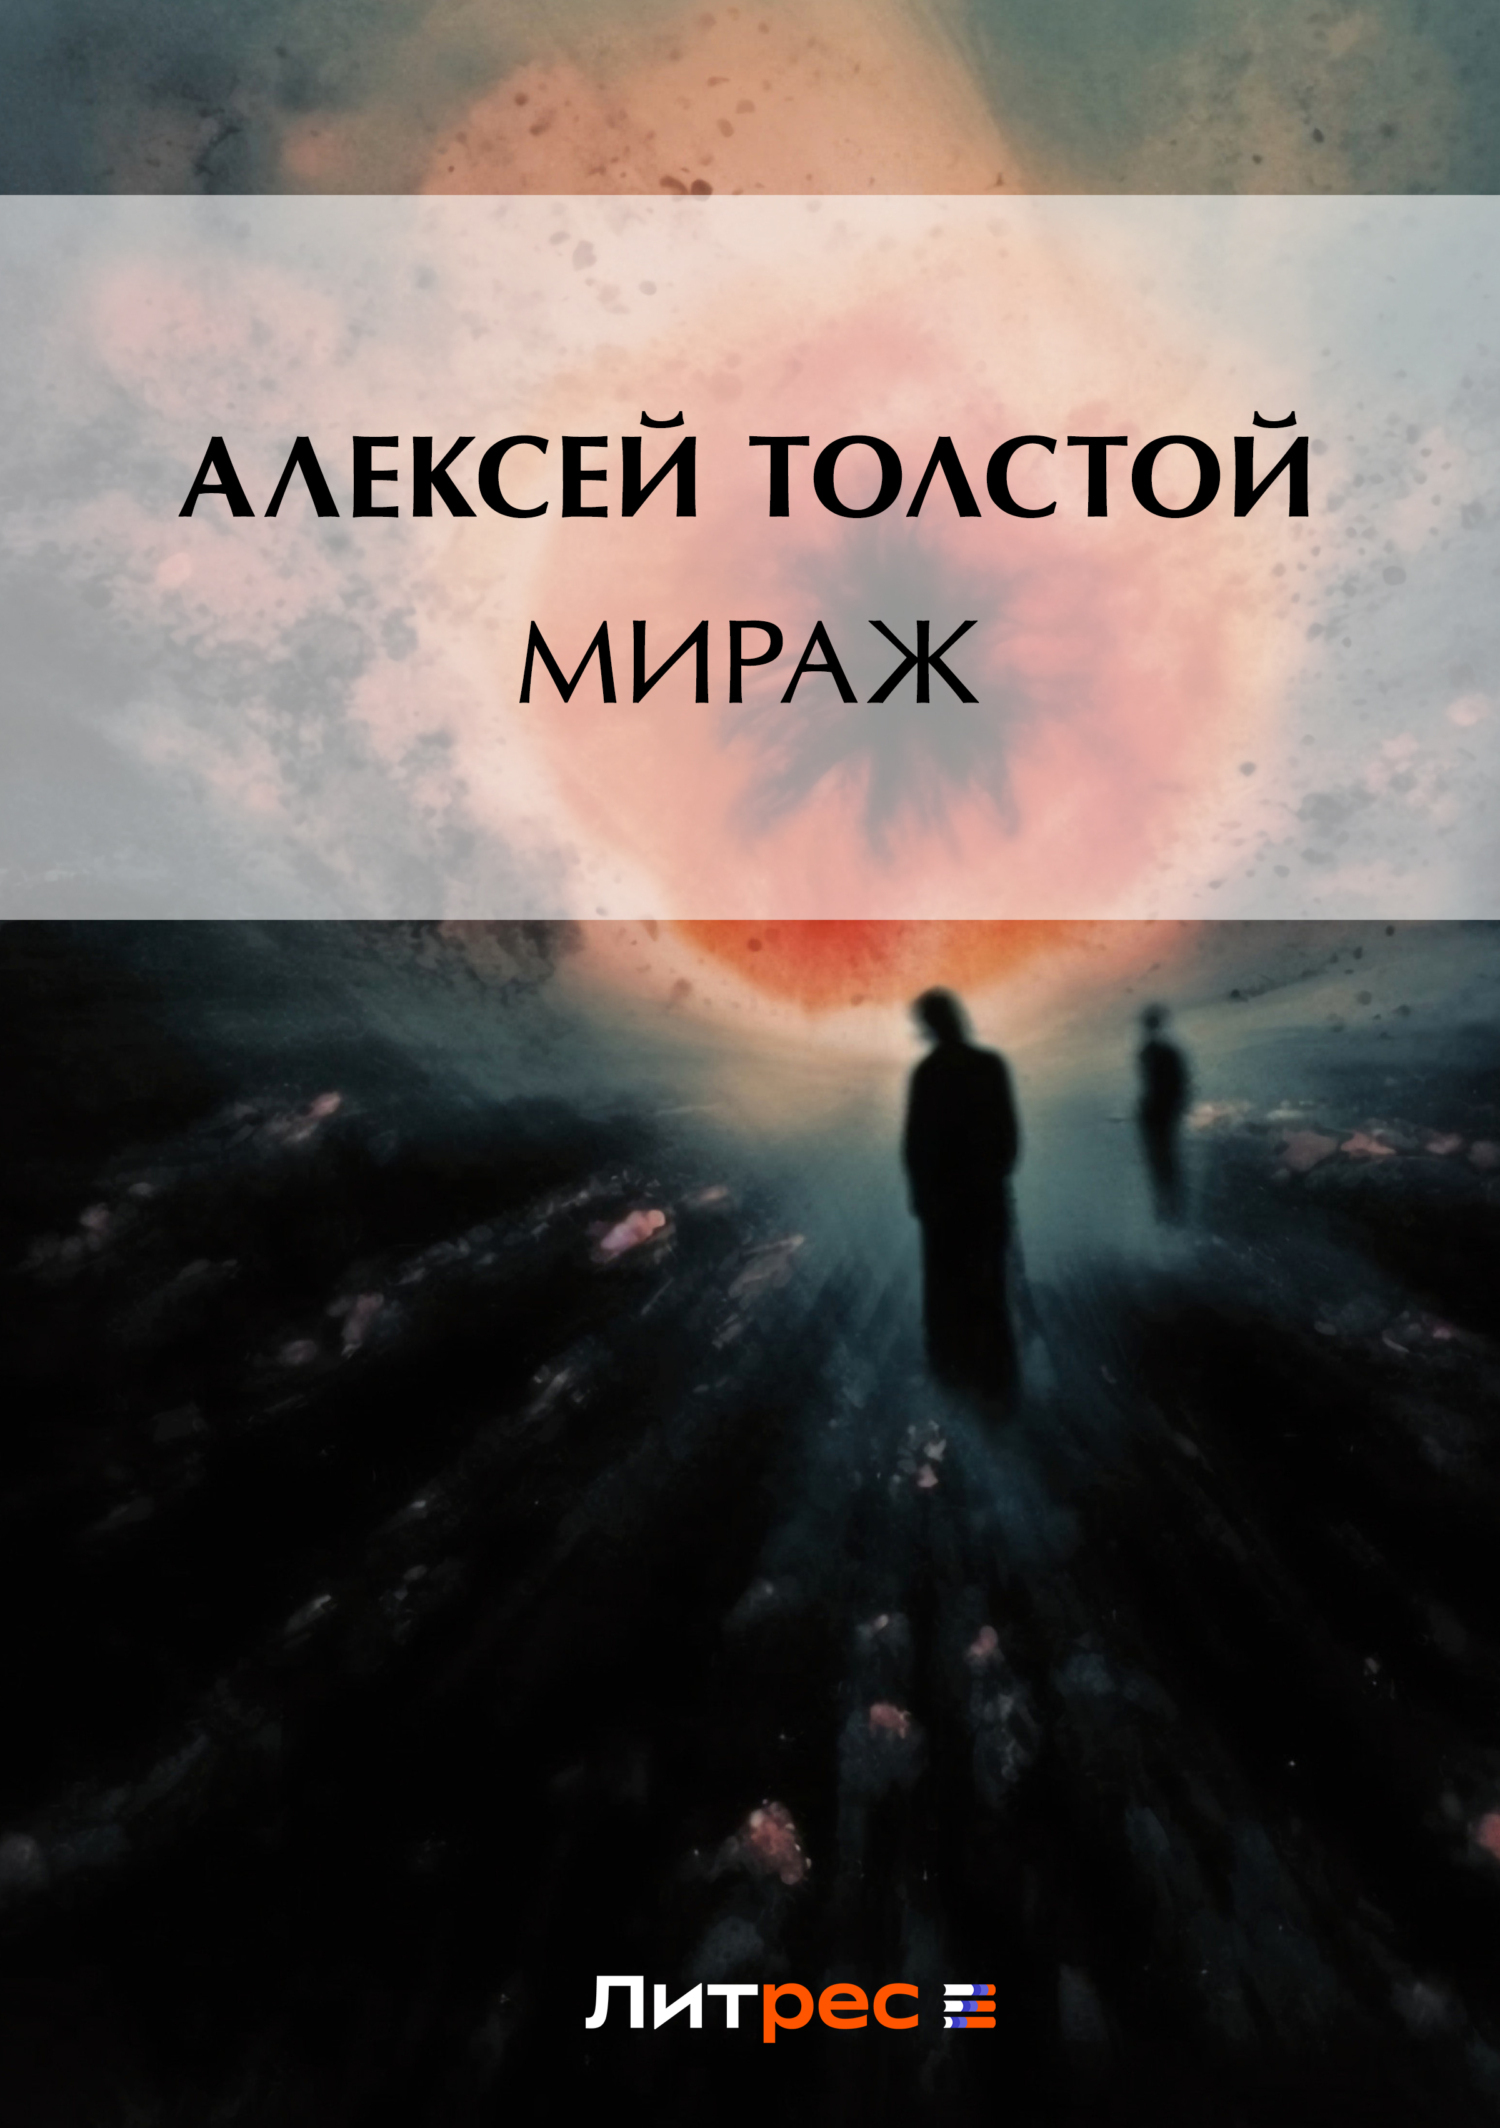 Книга Мираж из серии , созданная Алексей Толстой, может относится к жанру Русская классика. Стоимость электронной книги Мираж с идентификатором 143098 составляет 19.00 руб.